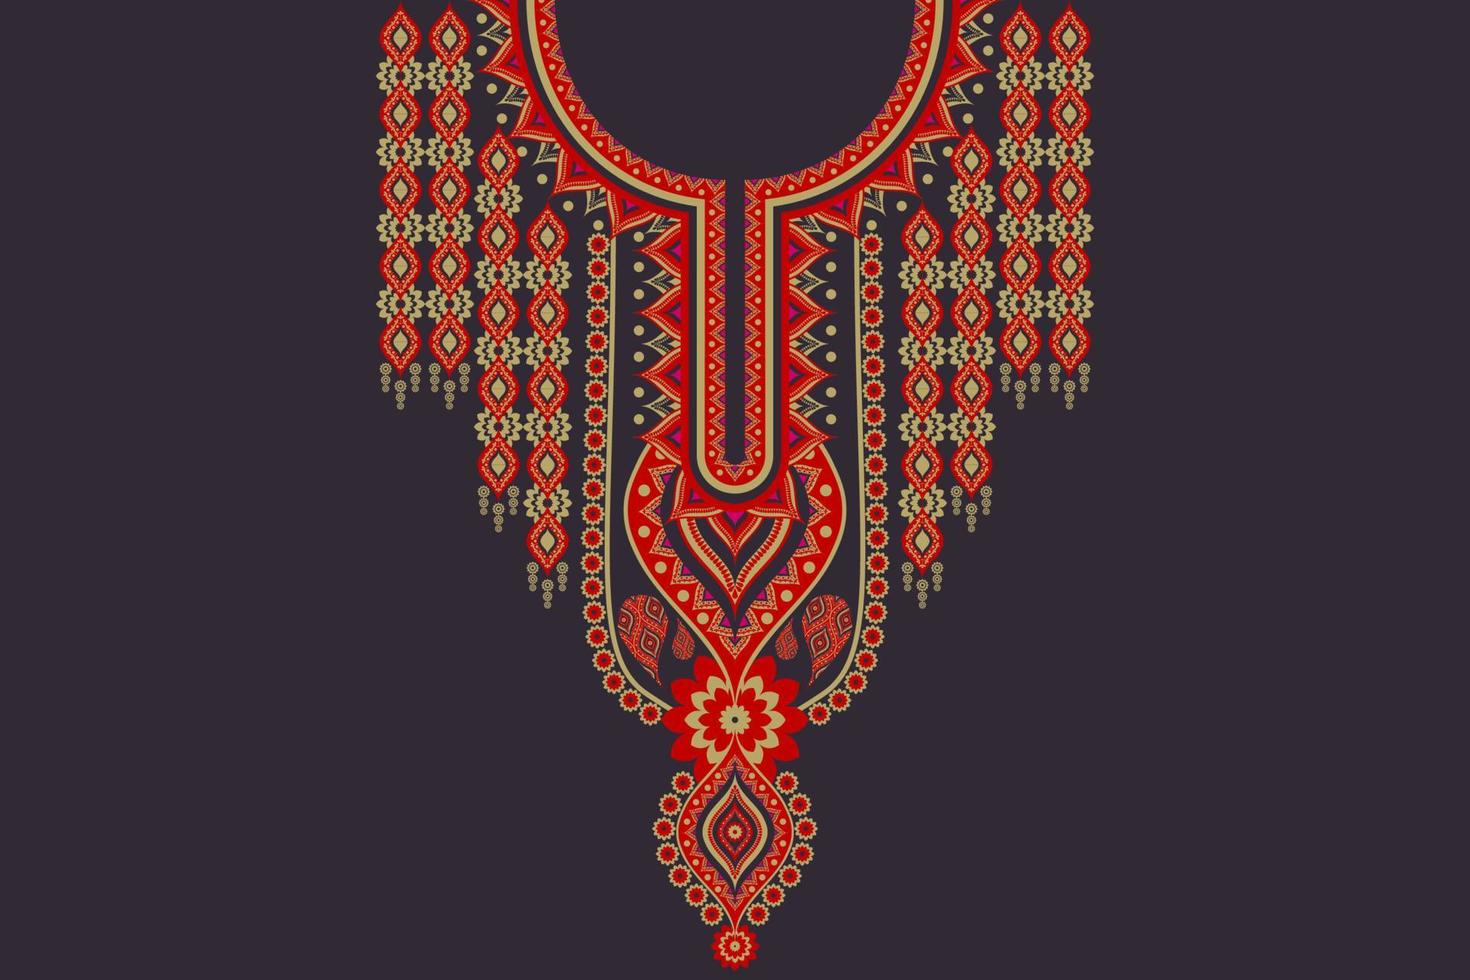 etnische hals borduurwerk bloem rood-goud kleur Indiase stijl op zwarte achtergrond. elegante tribale kunst shirts mode. vector